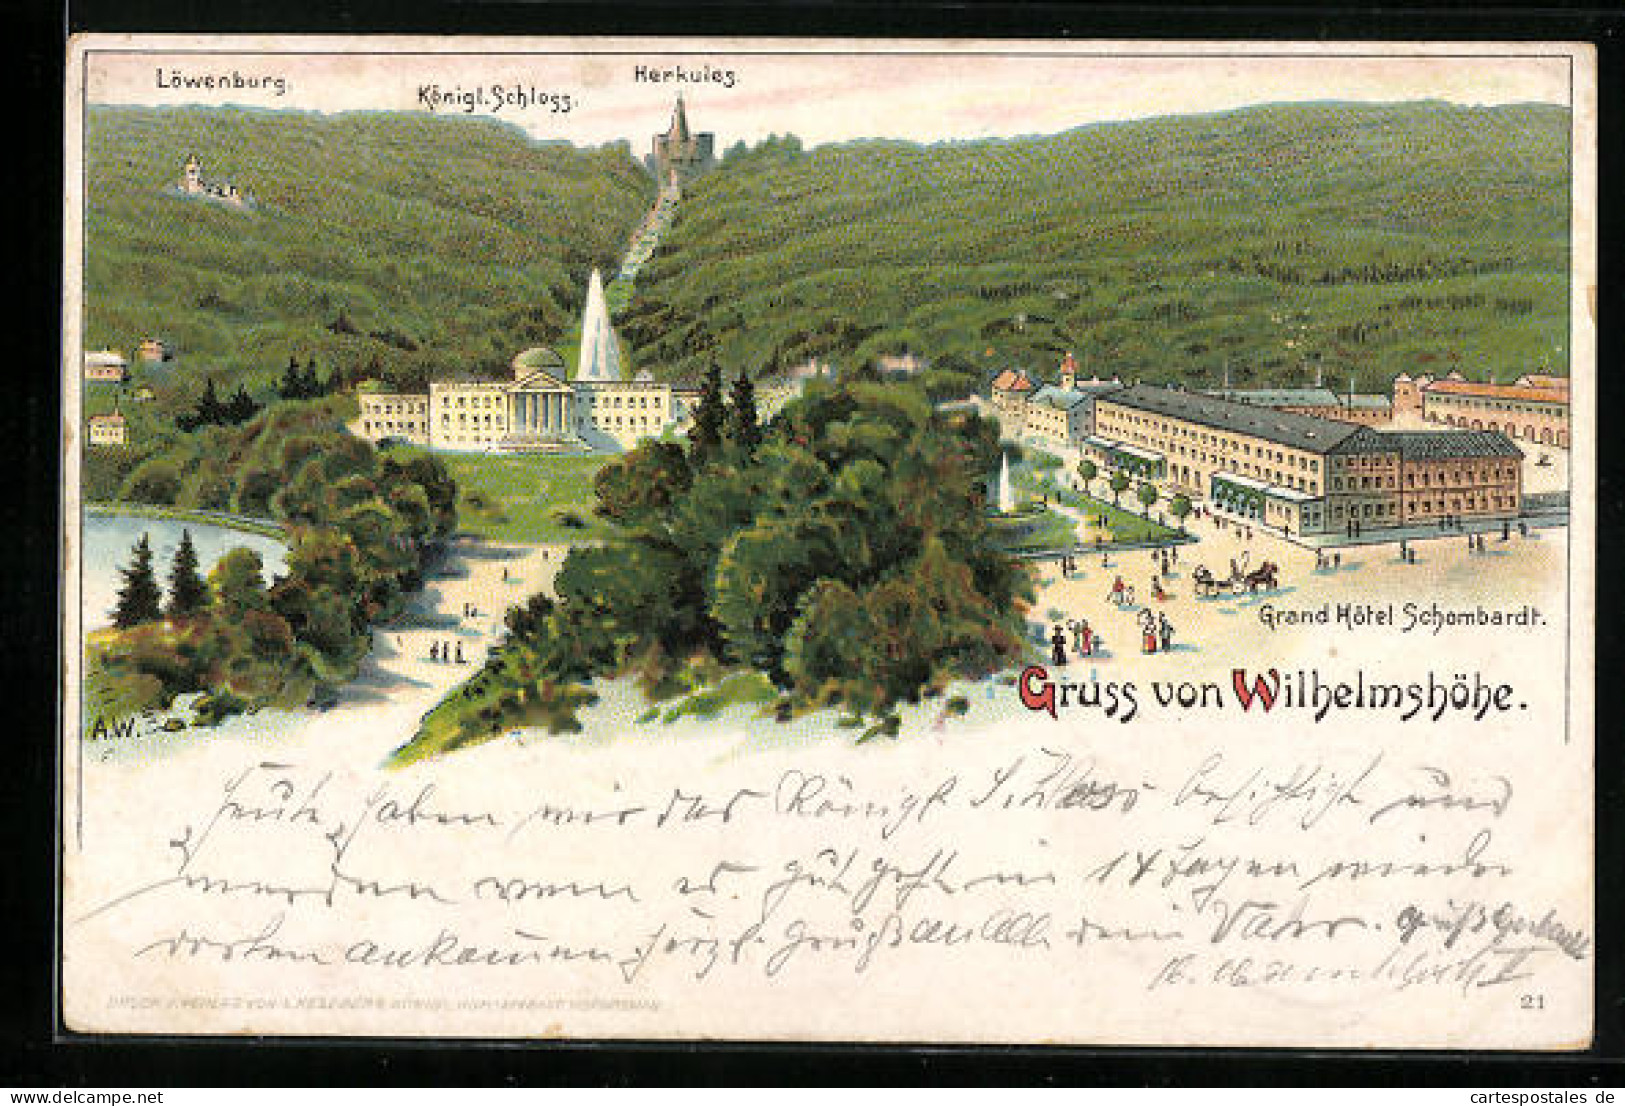 Lithographie Wilhelmshöhe, Grand Hotel Schombardt, Löwenburg, Königl. Schloss, Herkules  - Bad König